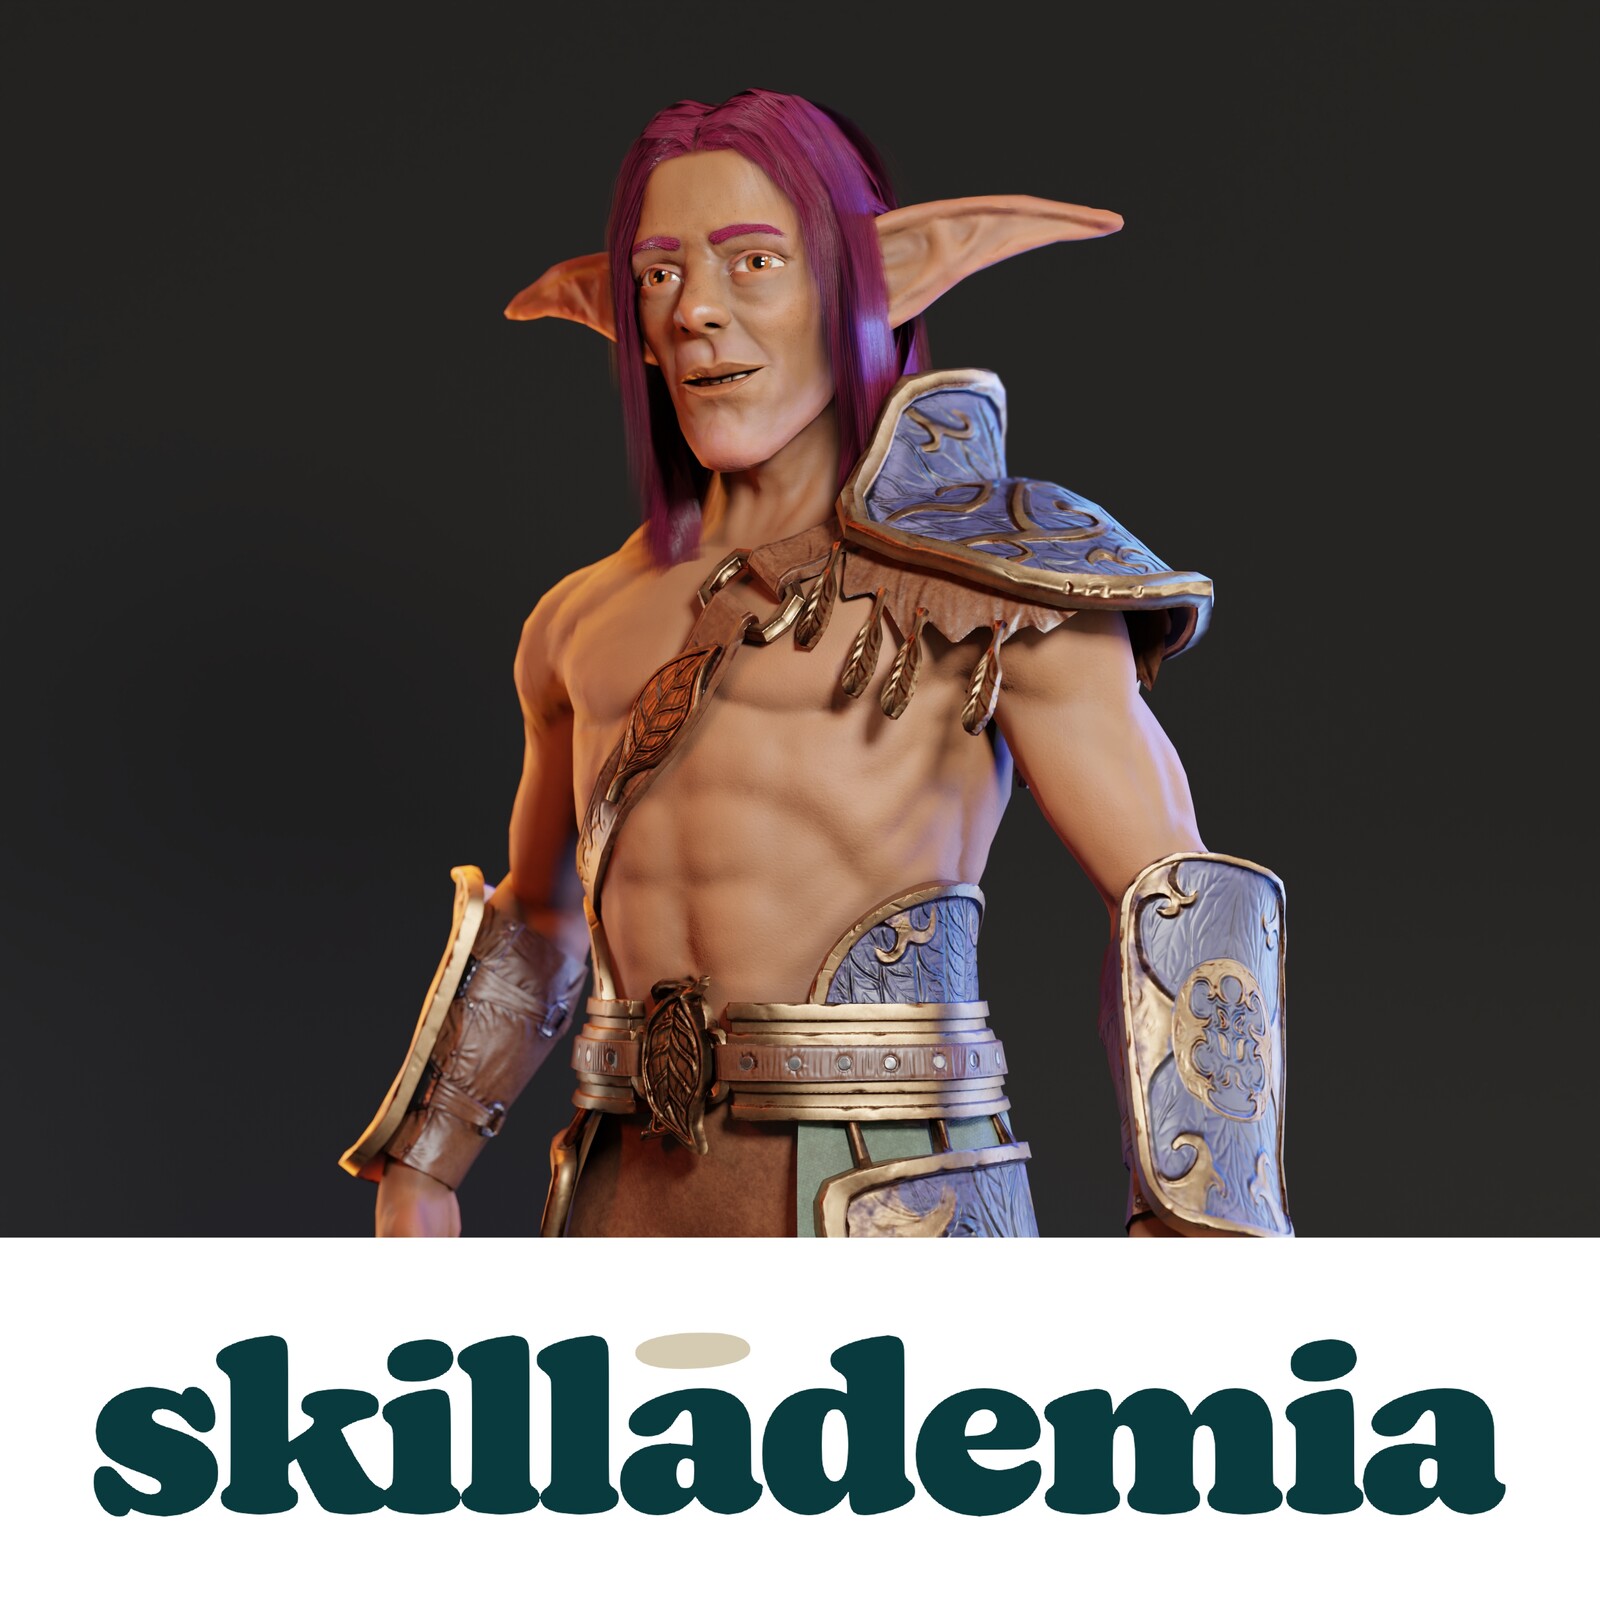 Skillademia Character Development In Blender